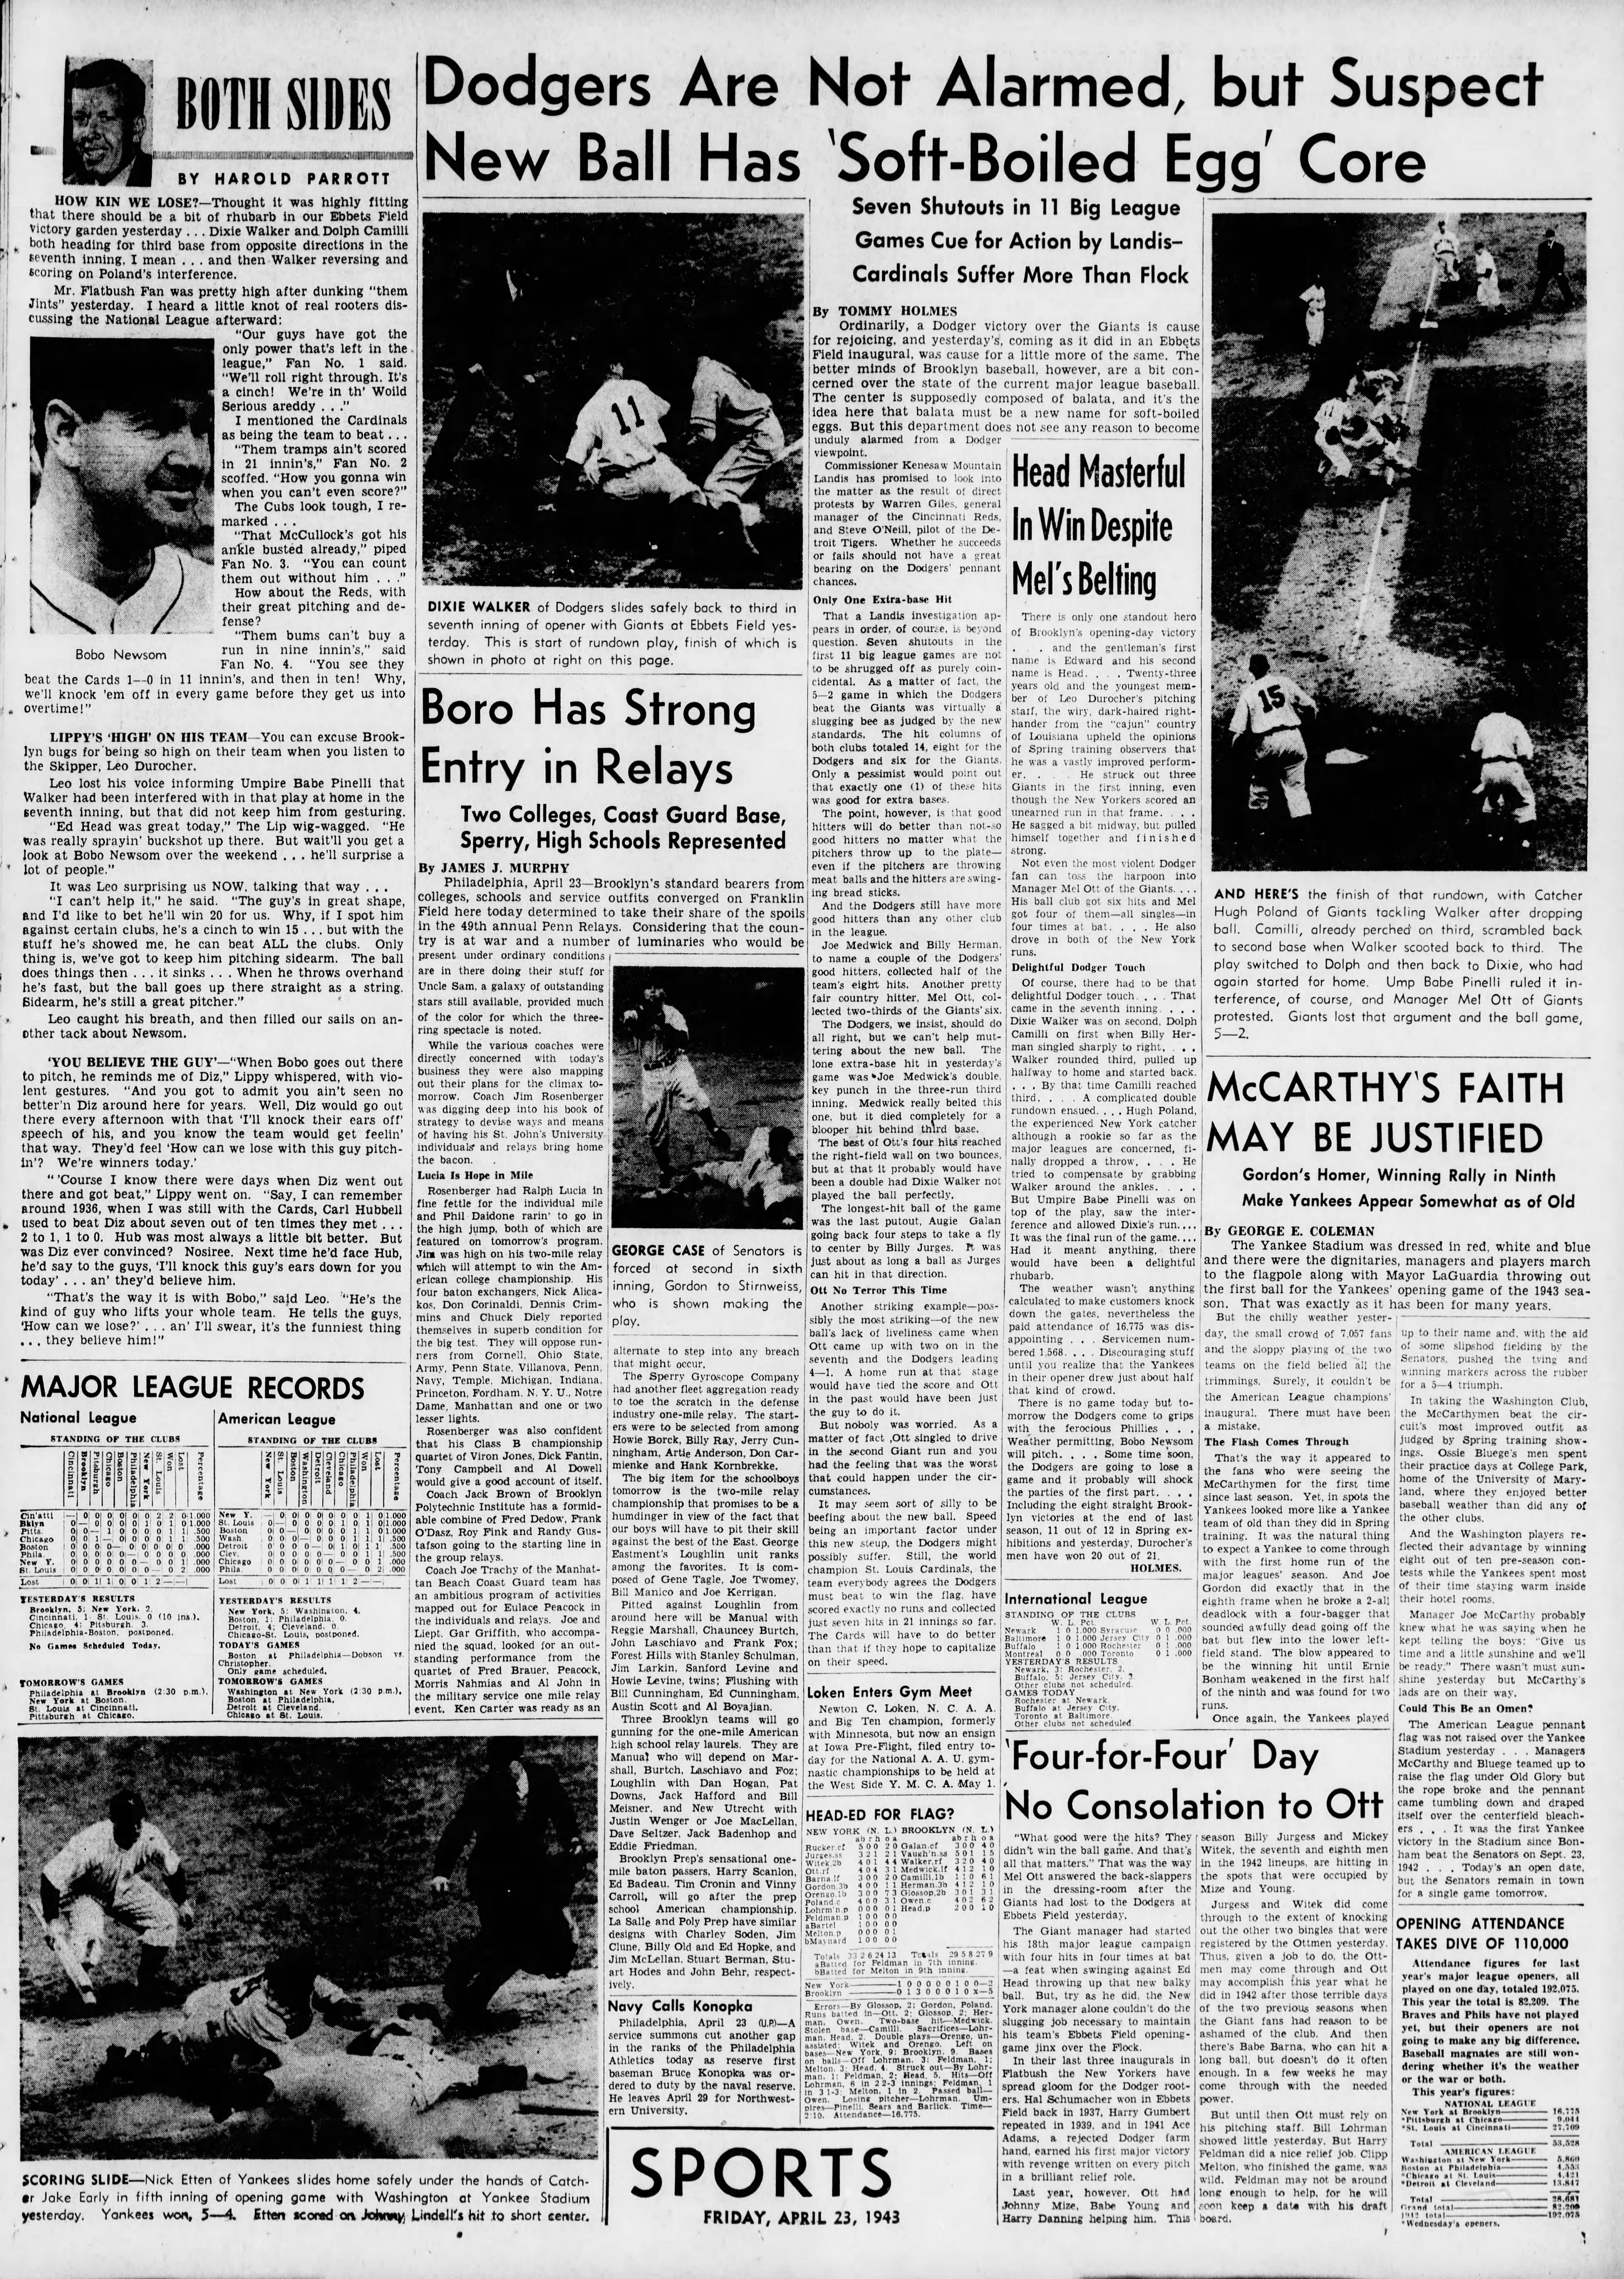 The_Brooklyn_Daily_Eagle_Fri__Apr_23__1943_(4).jpg